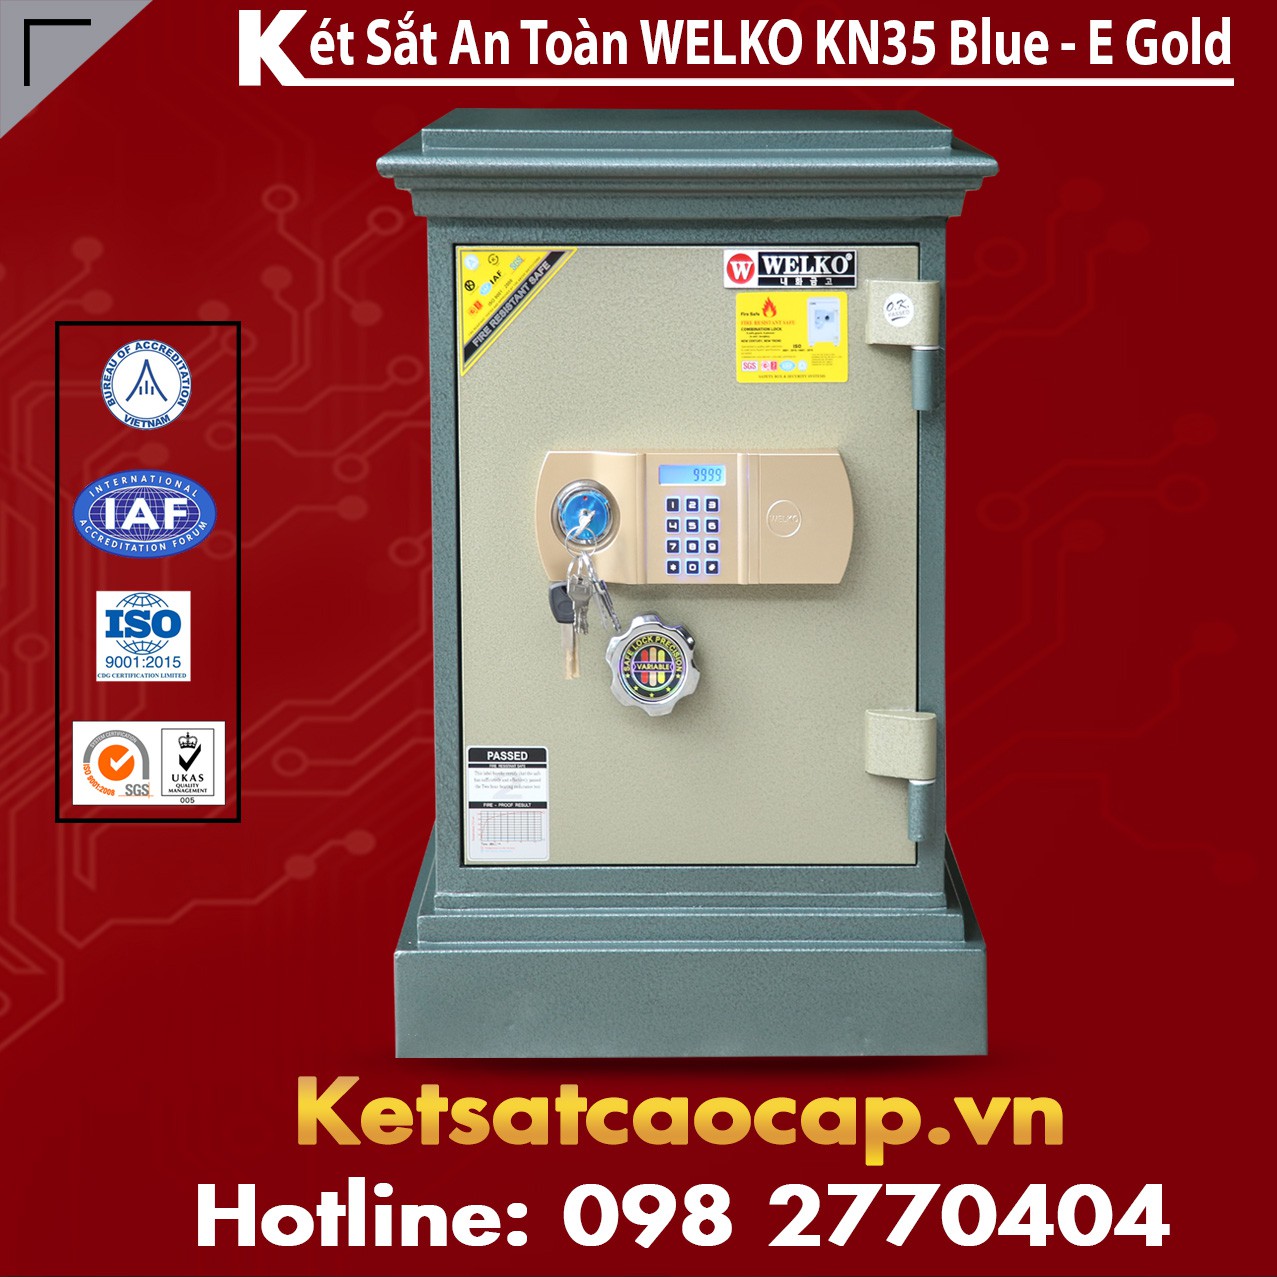 Két Sắt Quảng Trị WELKO KN35 - E Gold